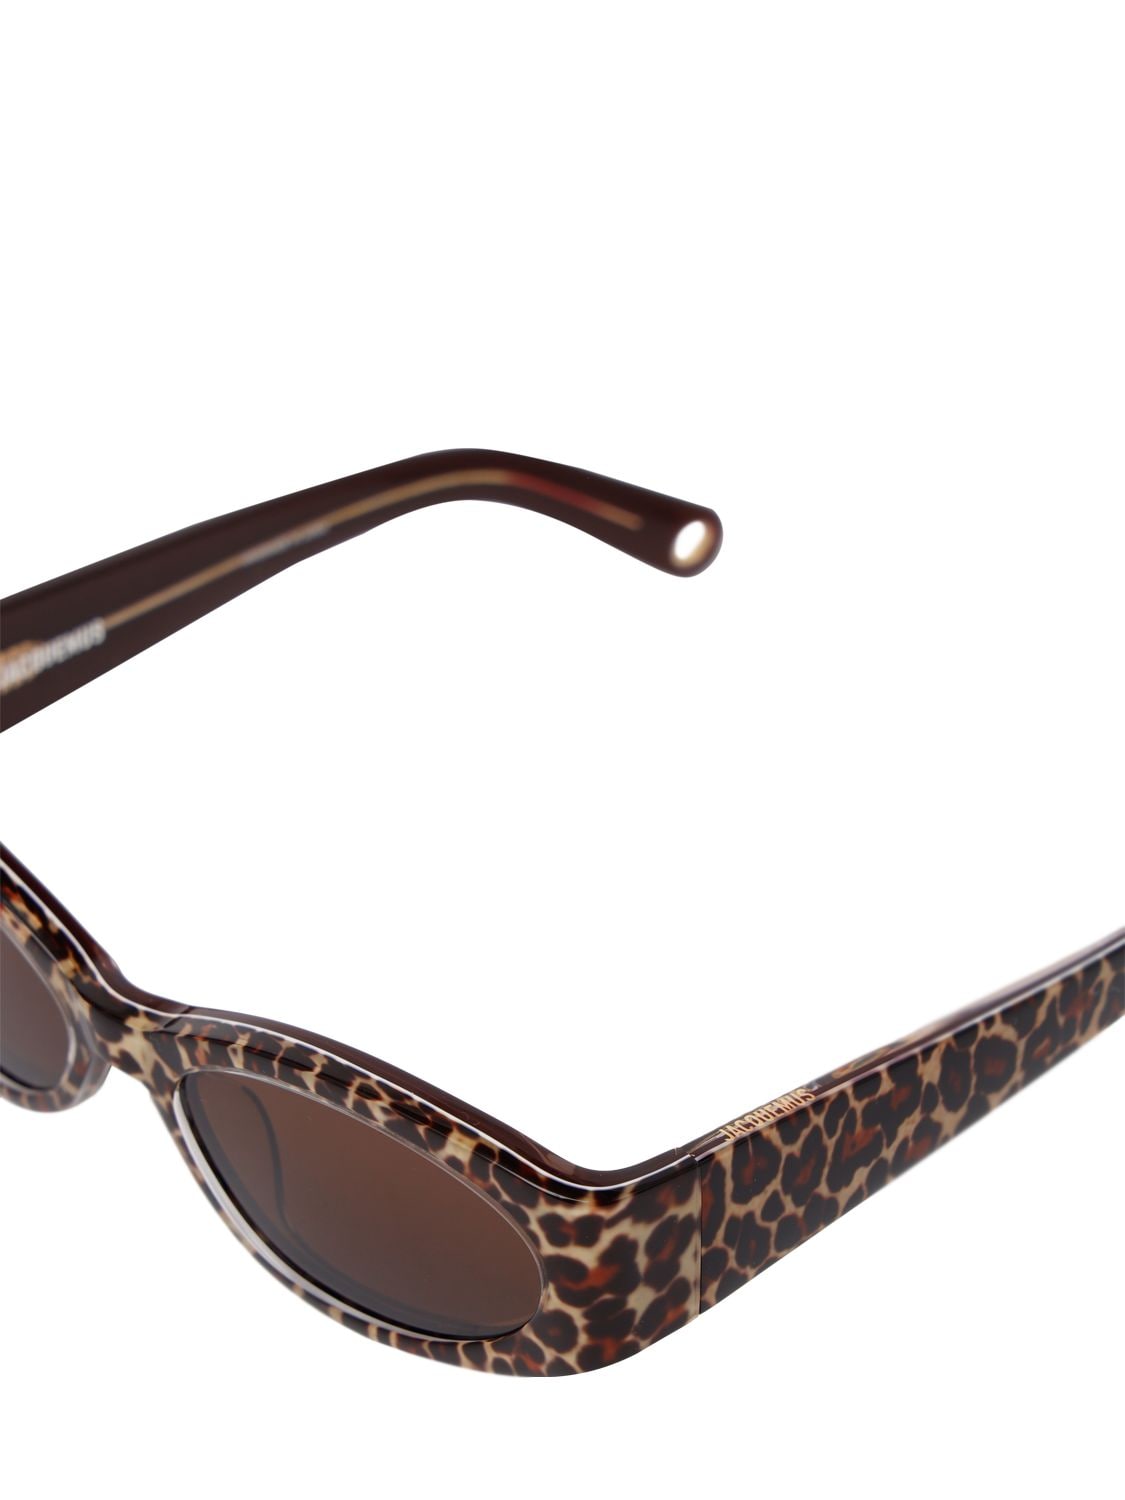 Shop Jacquemus Les Lunettes Ovalo Sunglasses In Leopard,brown